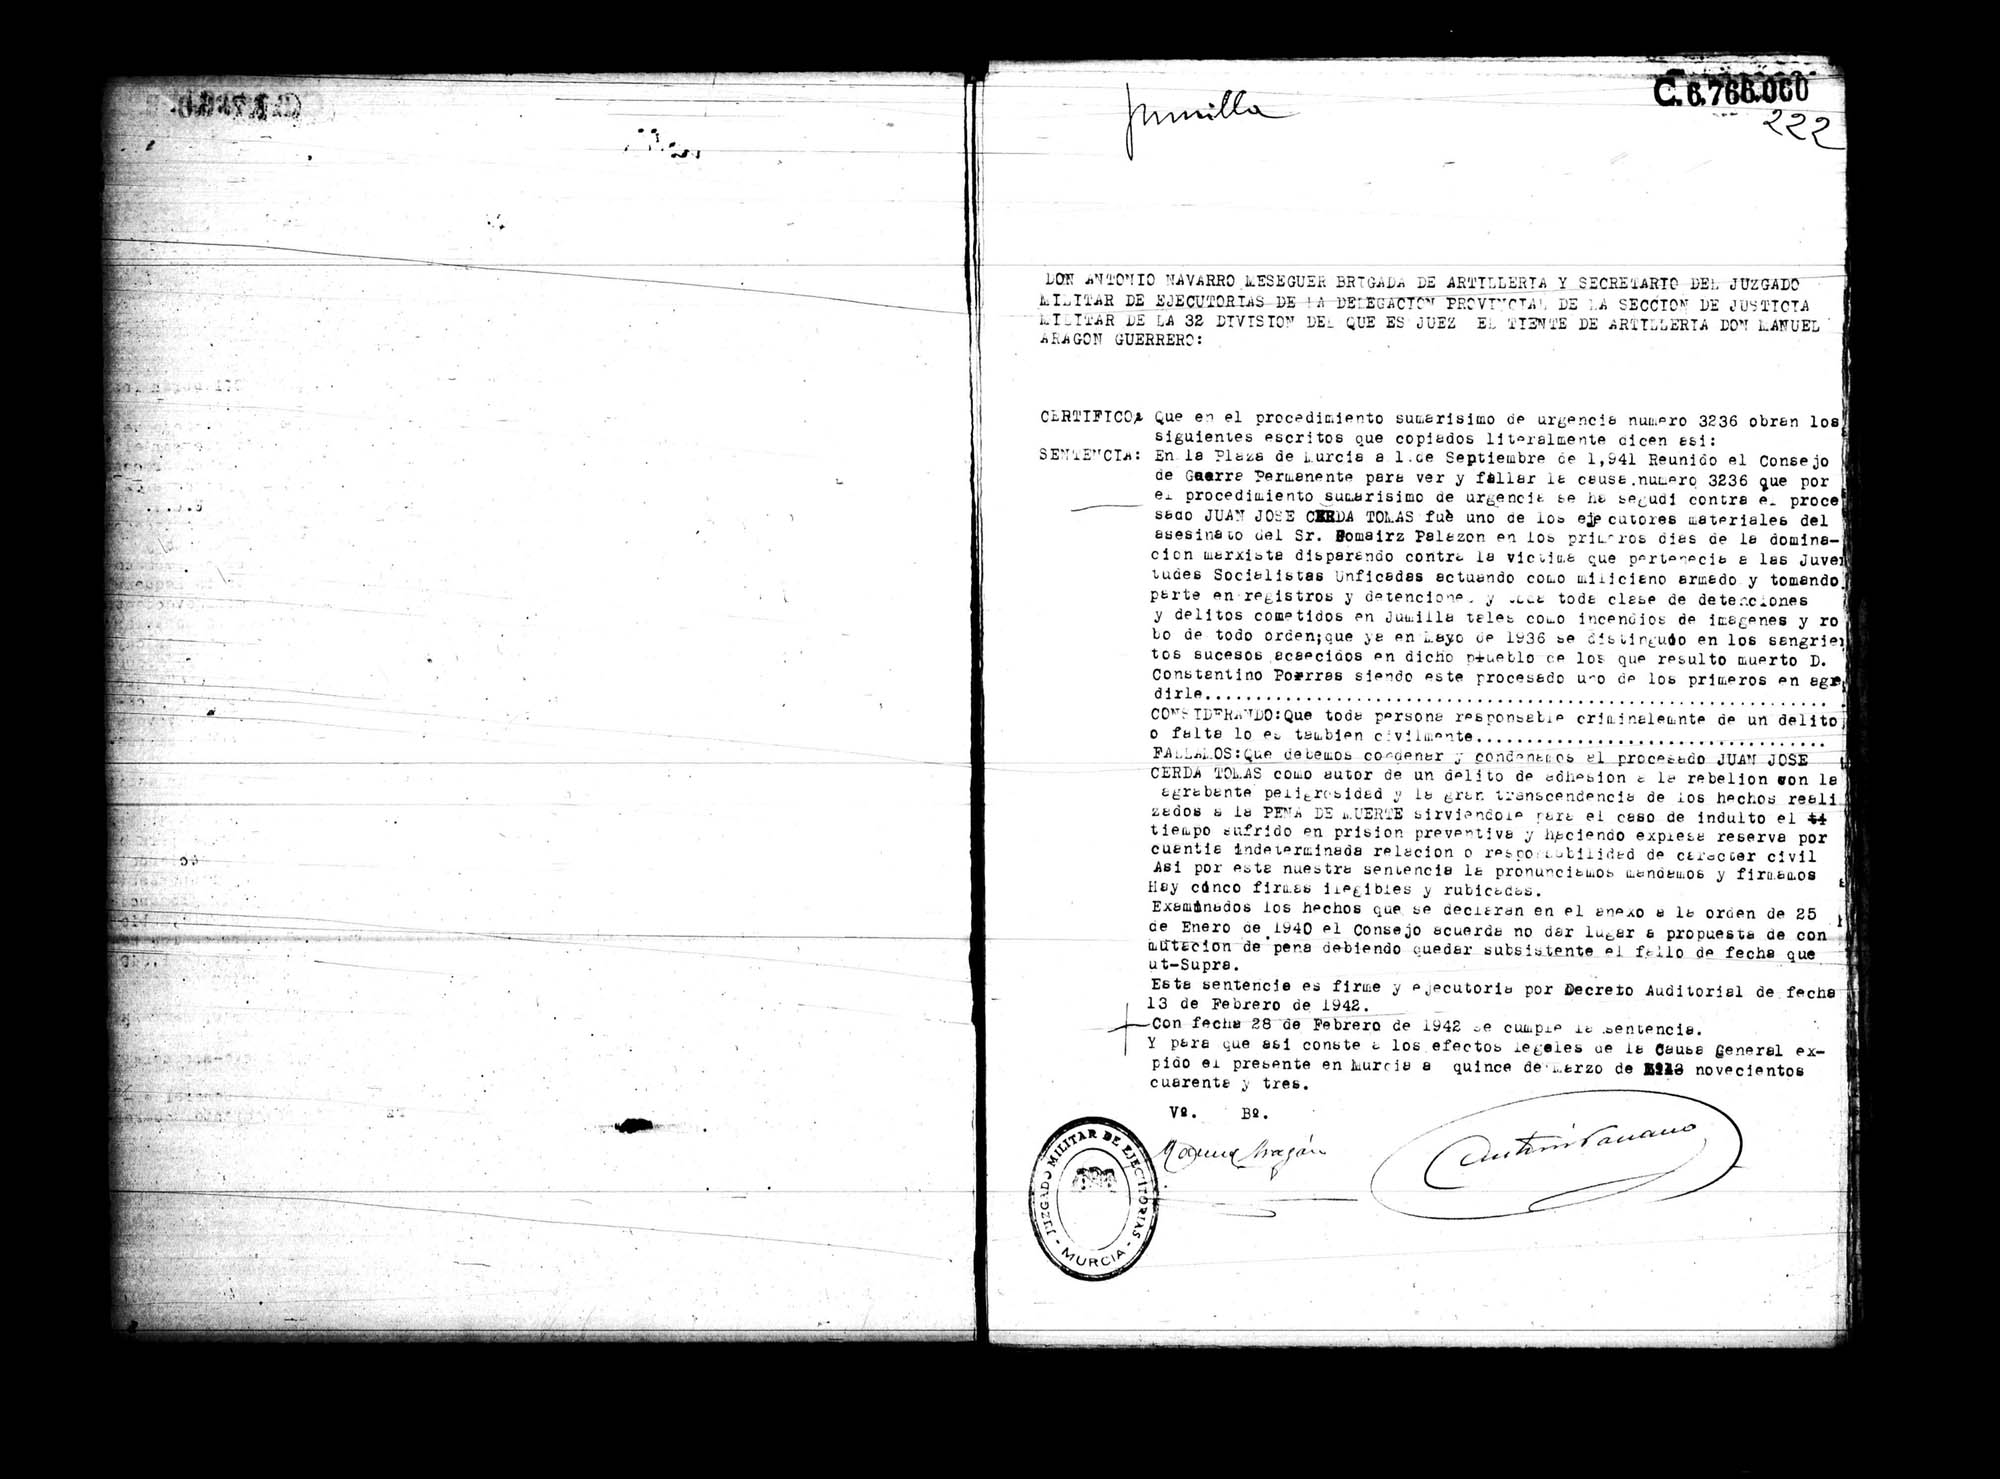 Certificado de la sentencia pronunciada contra Juan José Cerdá Tomás, causa 3236, el 1 de septiembre de 1941 en Murcia.